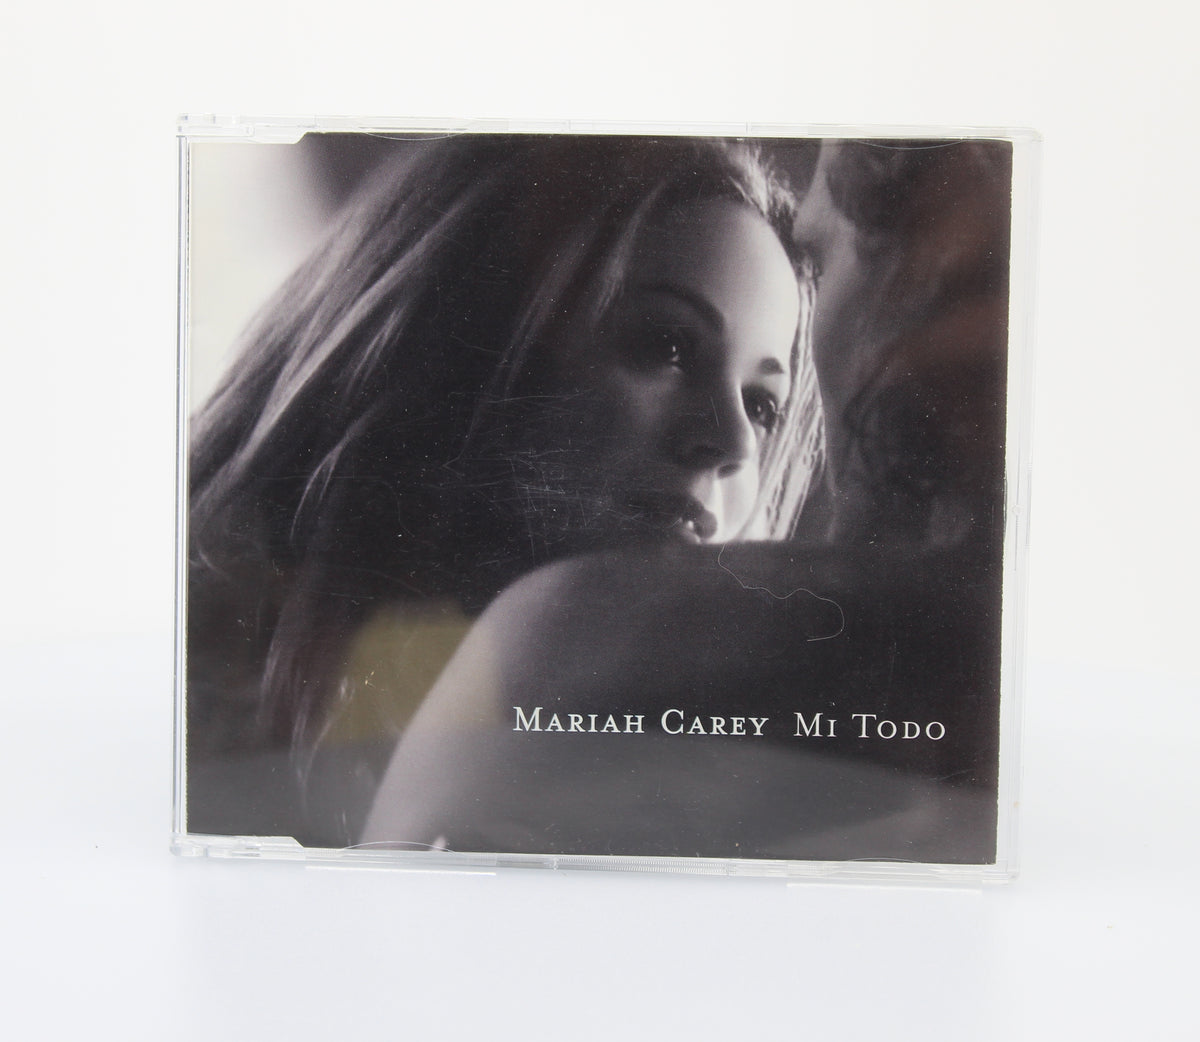 Mariah Carey, Mi Todo, CD Single Promo, Mexico 1998 (CD 642)